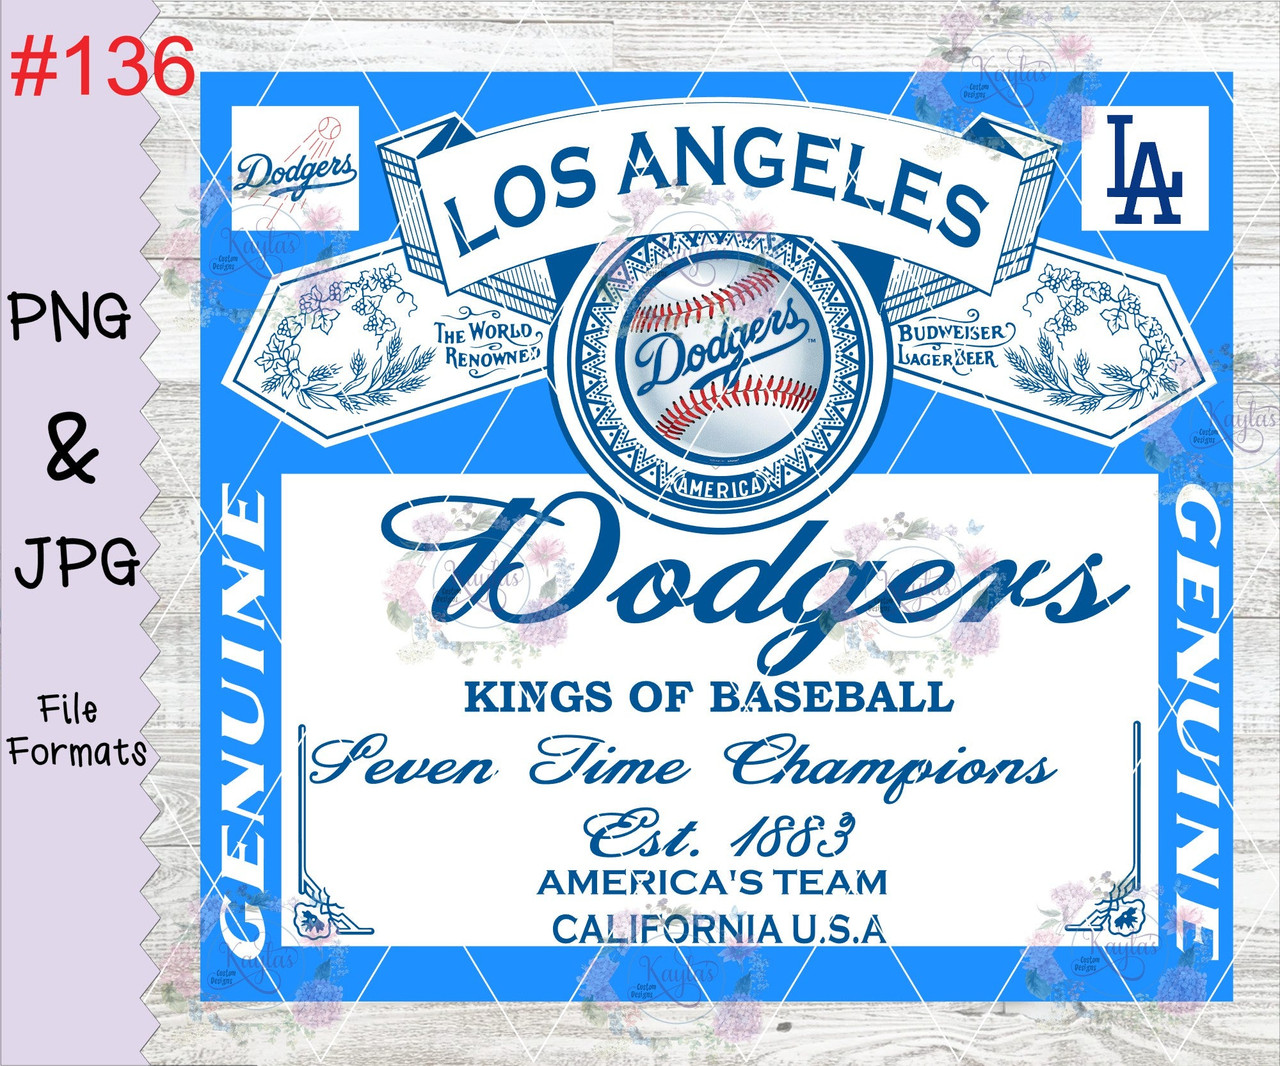 Digital Download, Los Angeles Dodgers svg, Los Angeles Dodgers